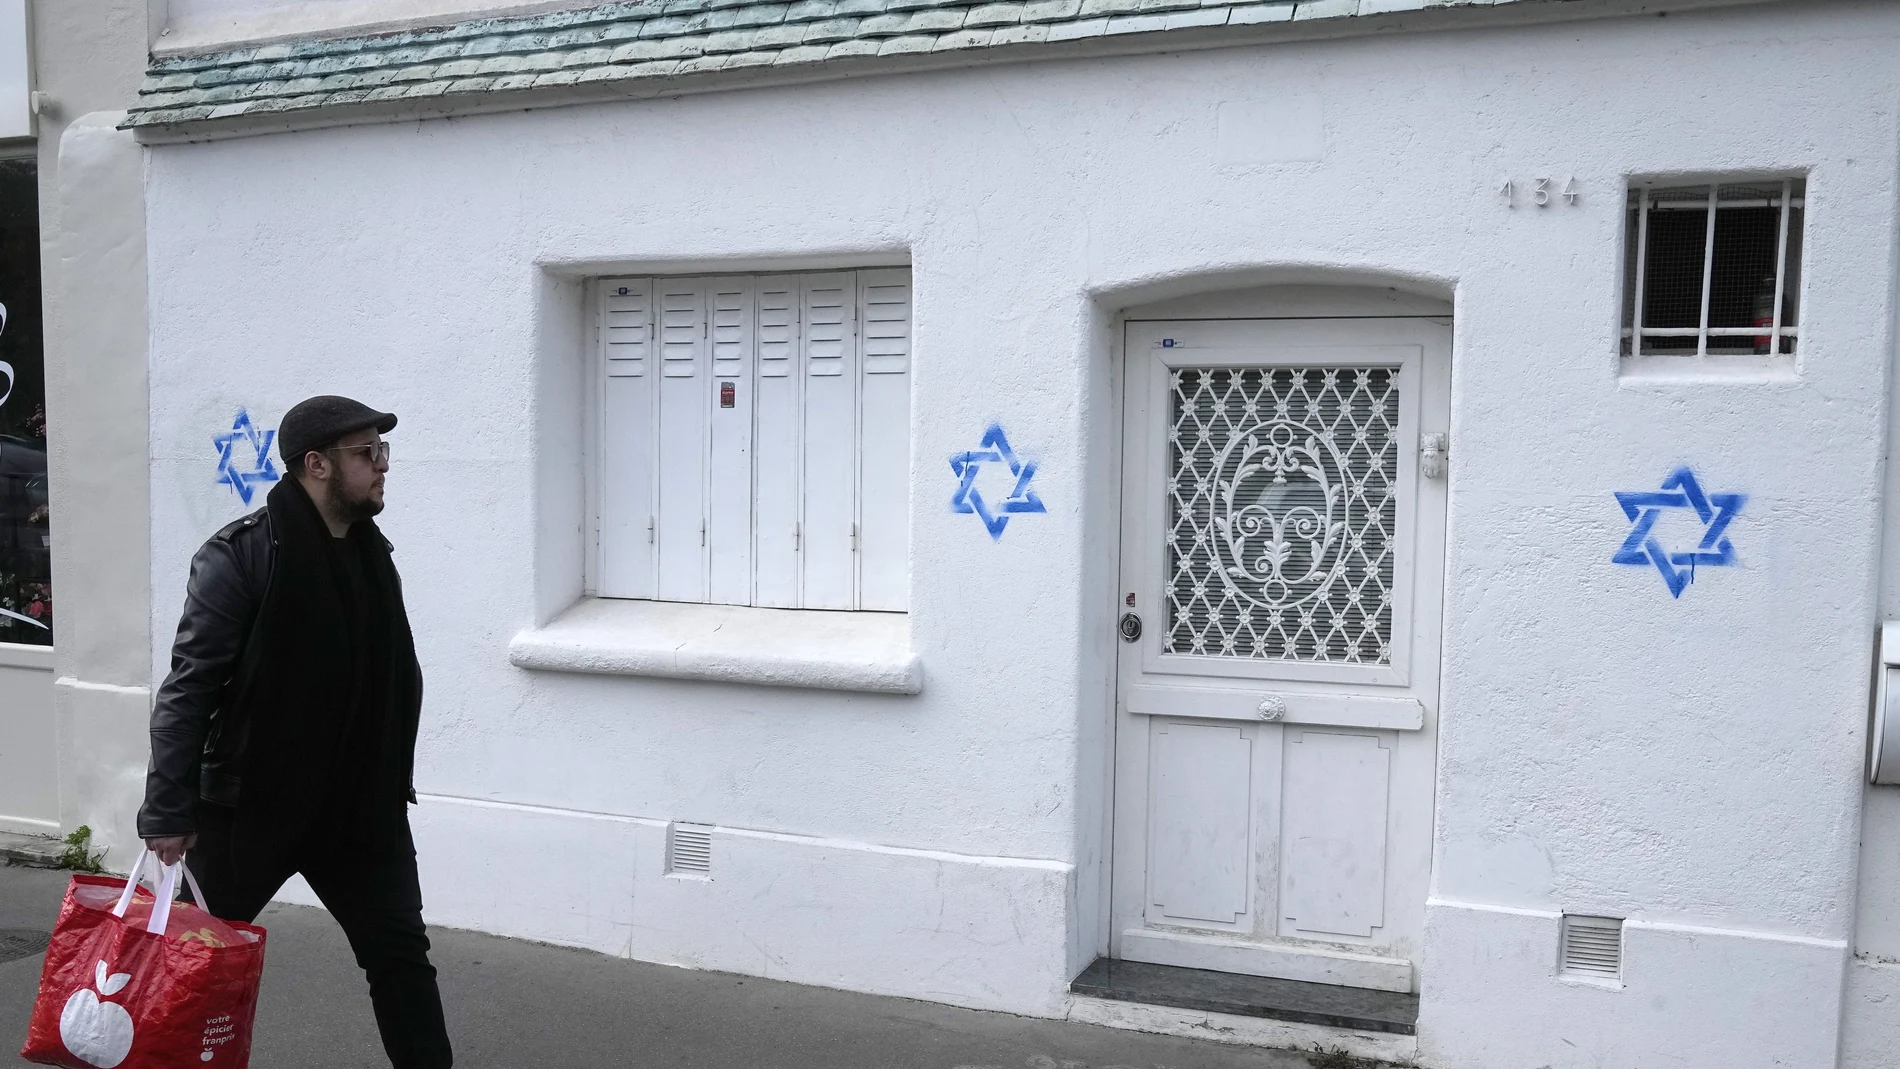 Estrellas de David dibujadas en casas de París